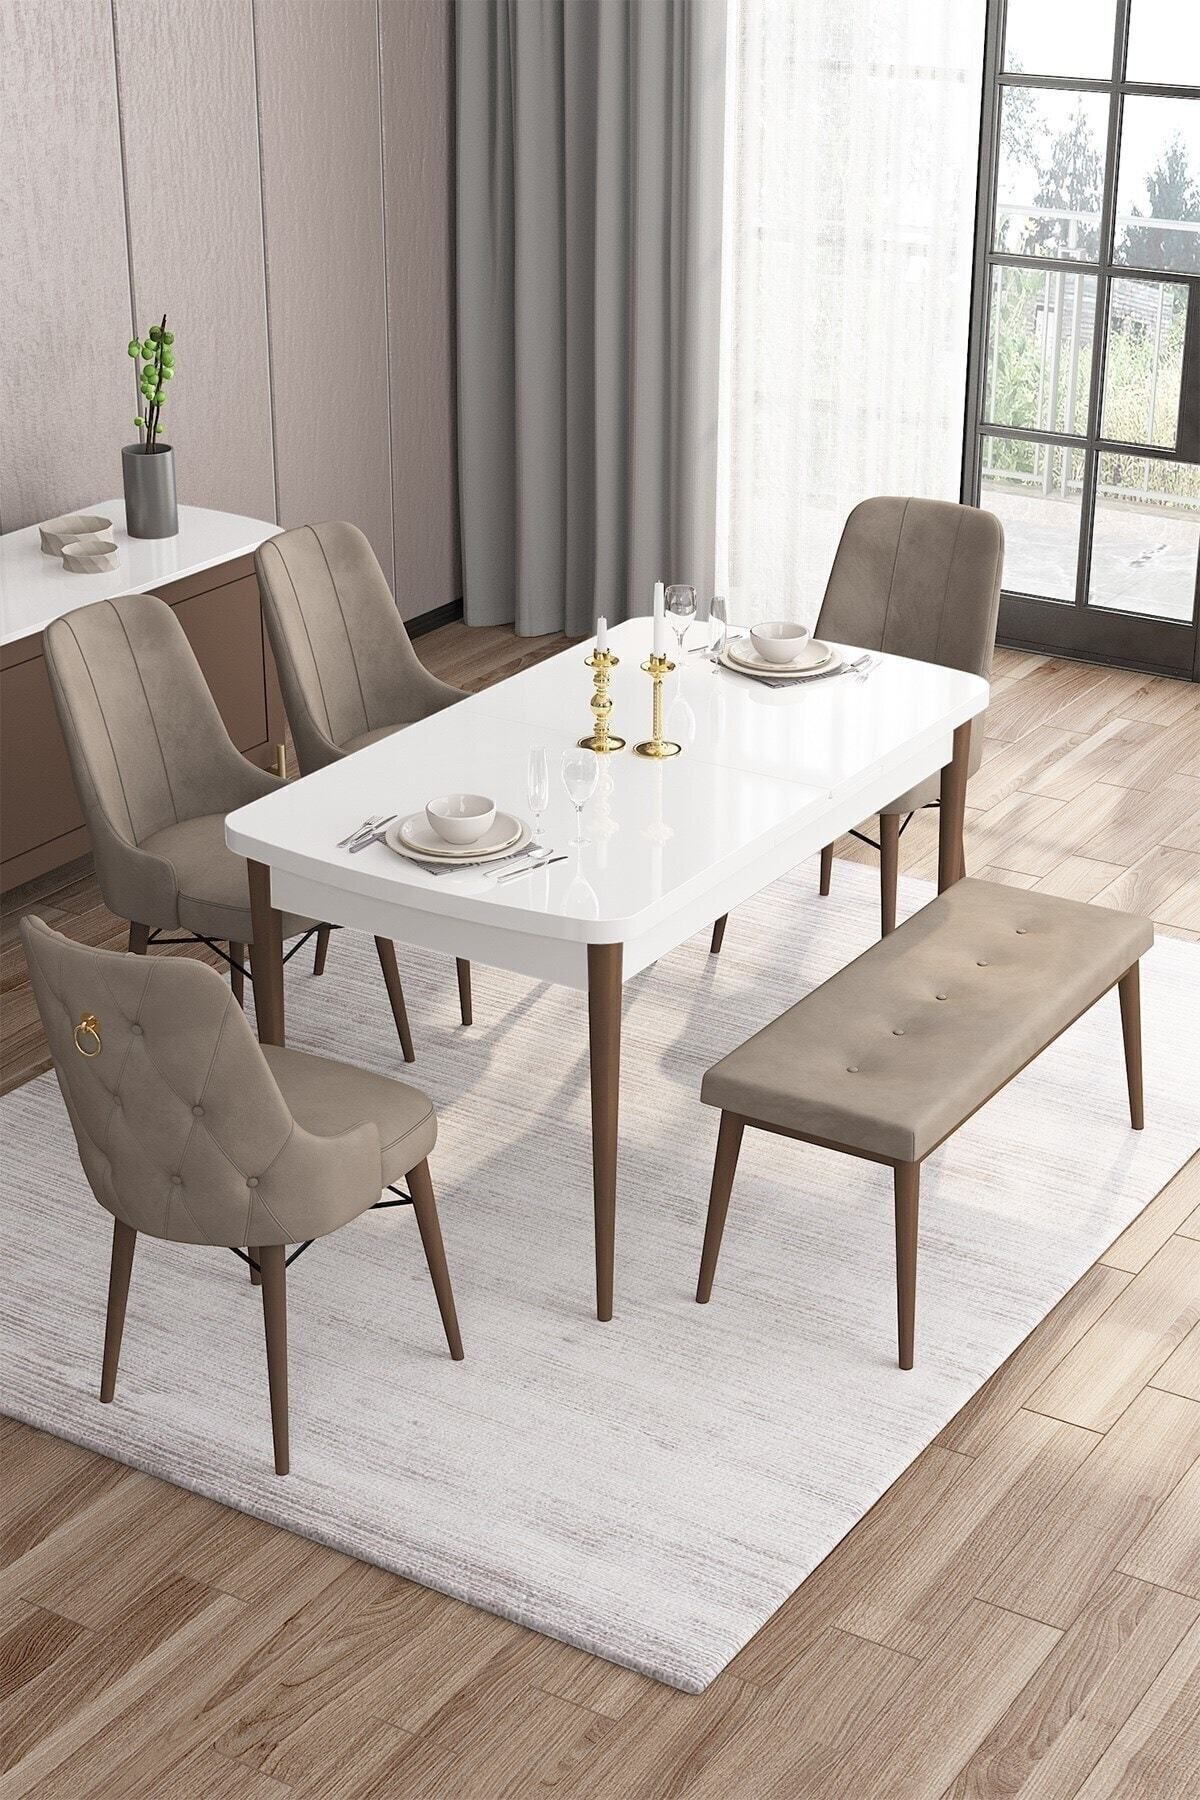 Canisa Are Serisi Beyaz Masa Ceviz Ayak 80x132 Mdf Yemek Masası 4 Cappucino Sandalye 1 Bench Gold Halka